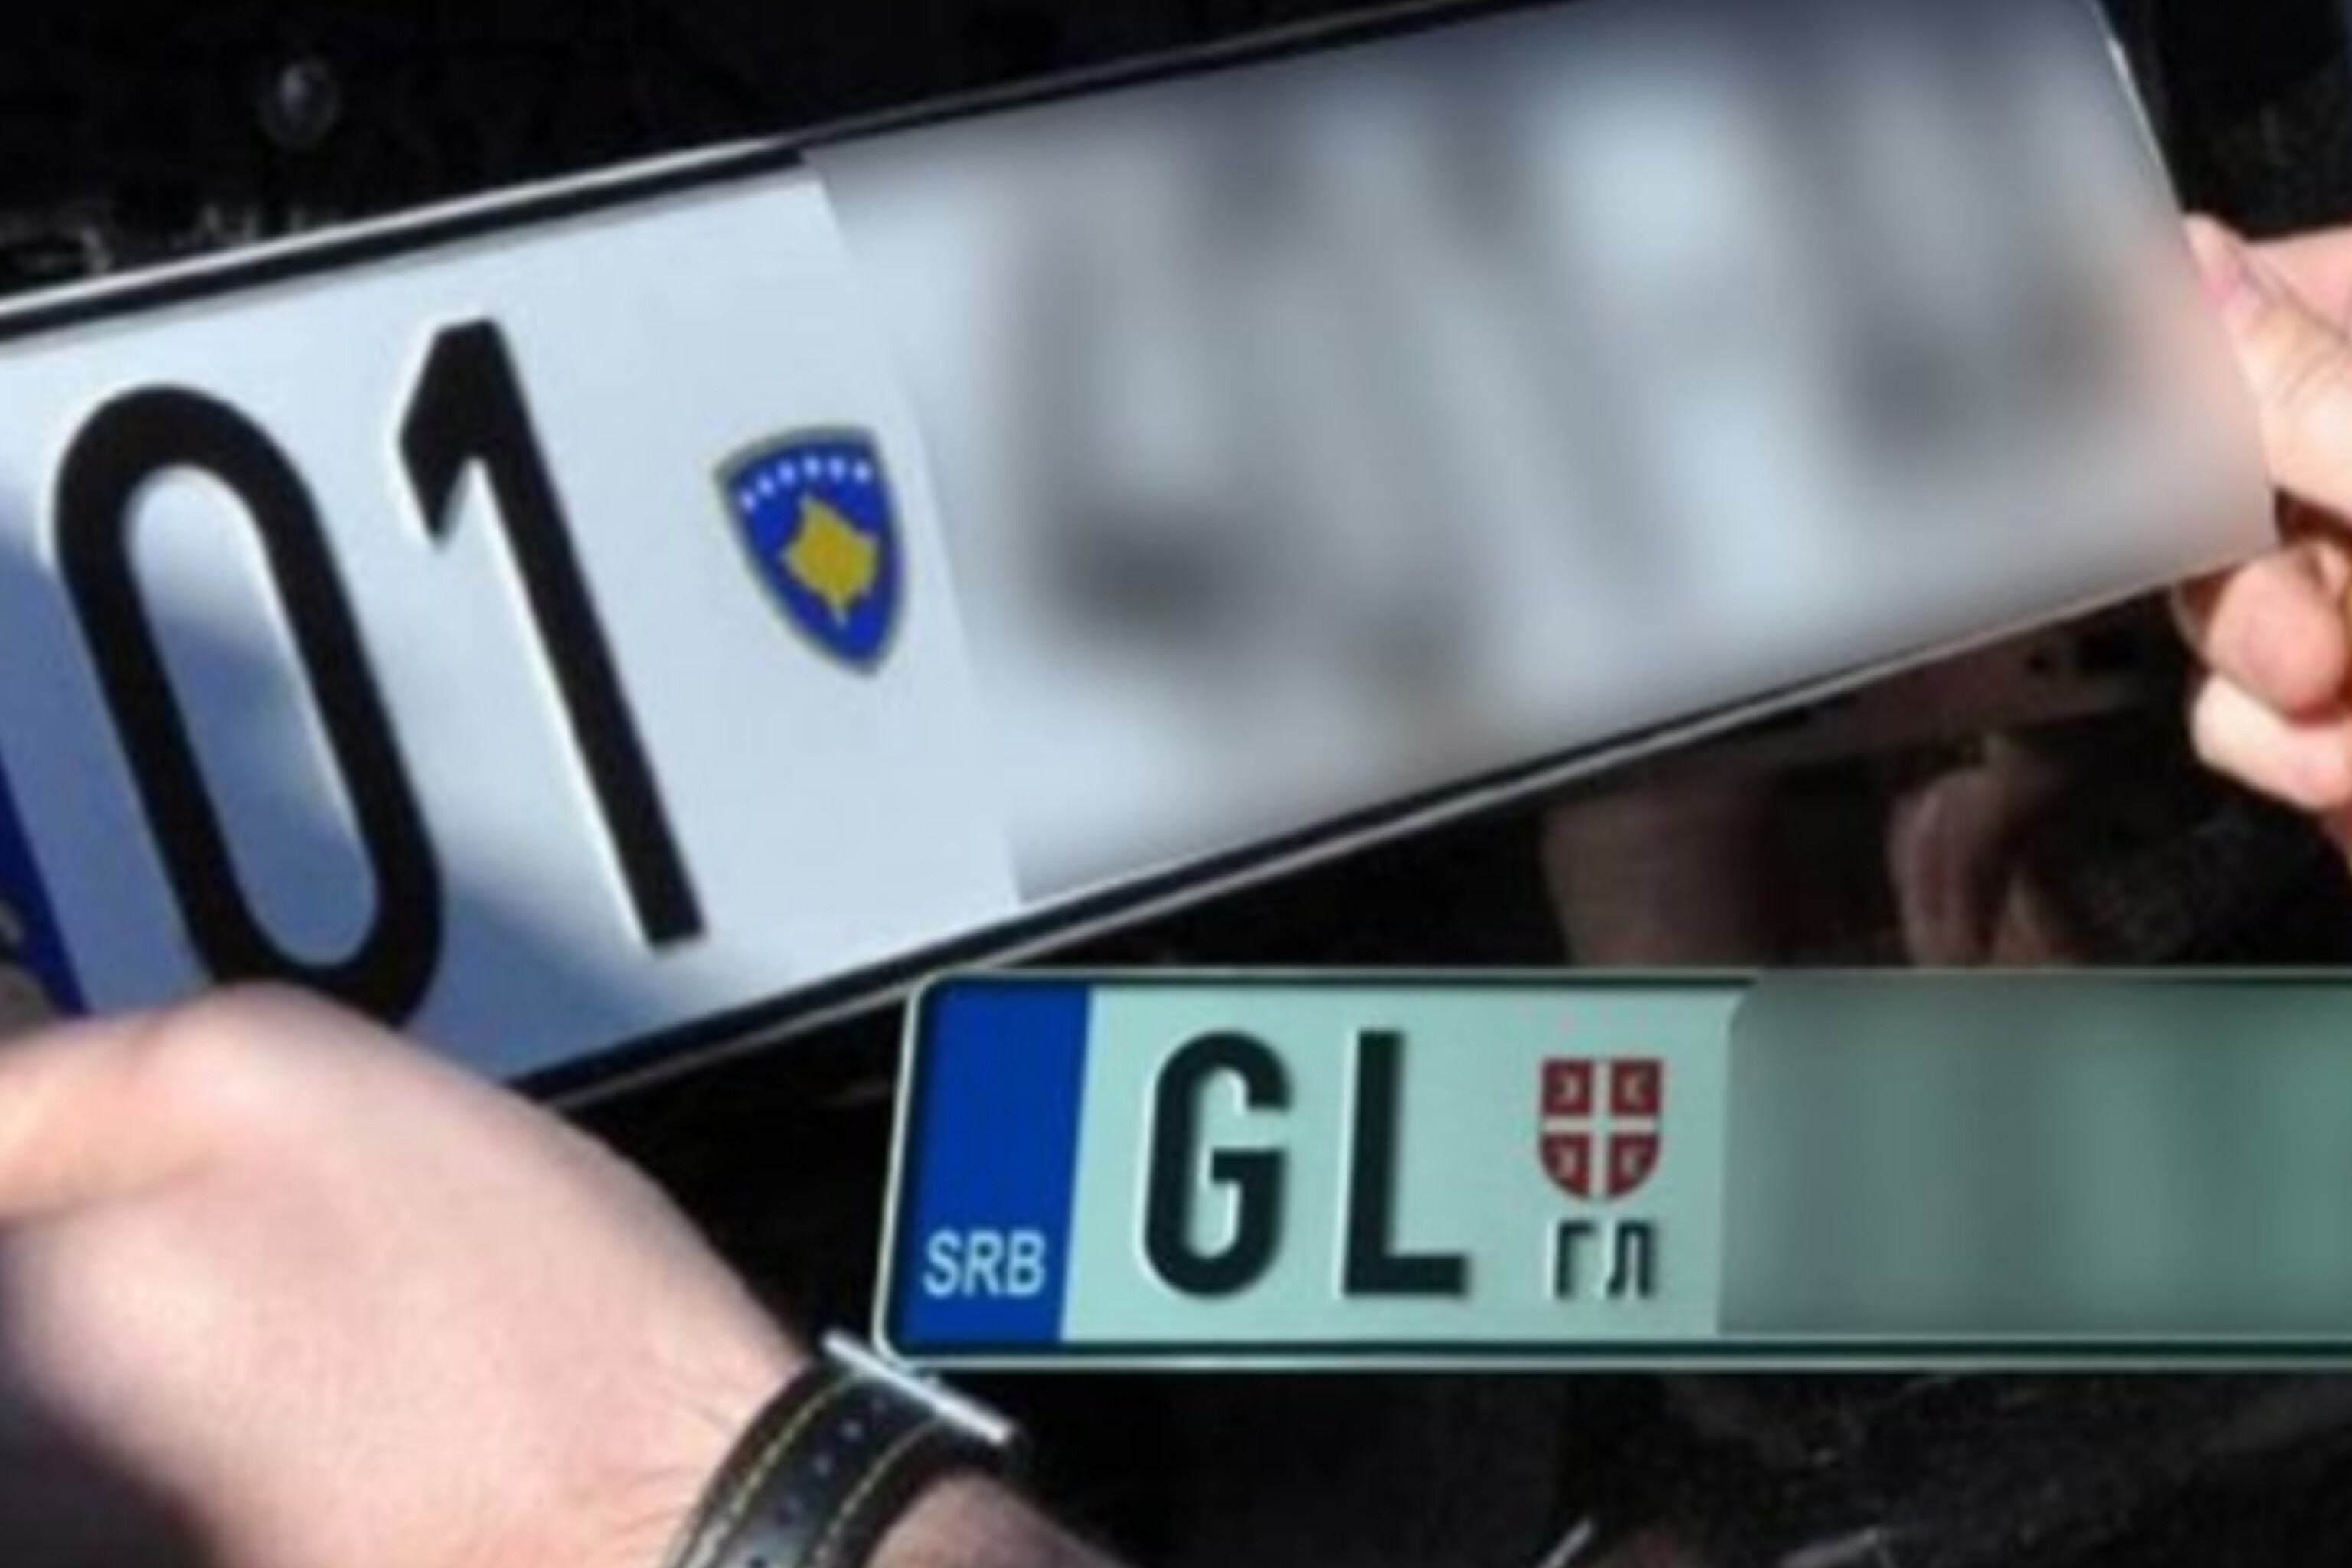 Kosova s’lejoi të hyjnë vetura me targa KM të regjistruara në dhjetor, reagon Washingtoni